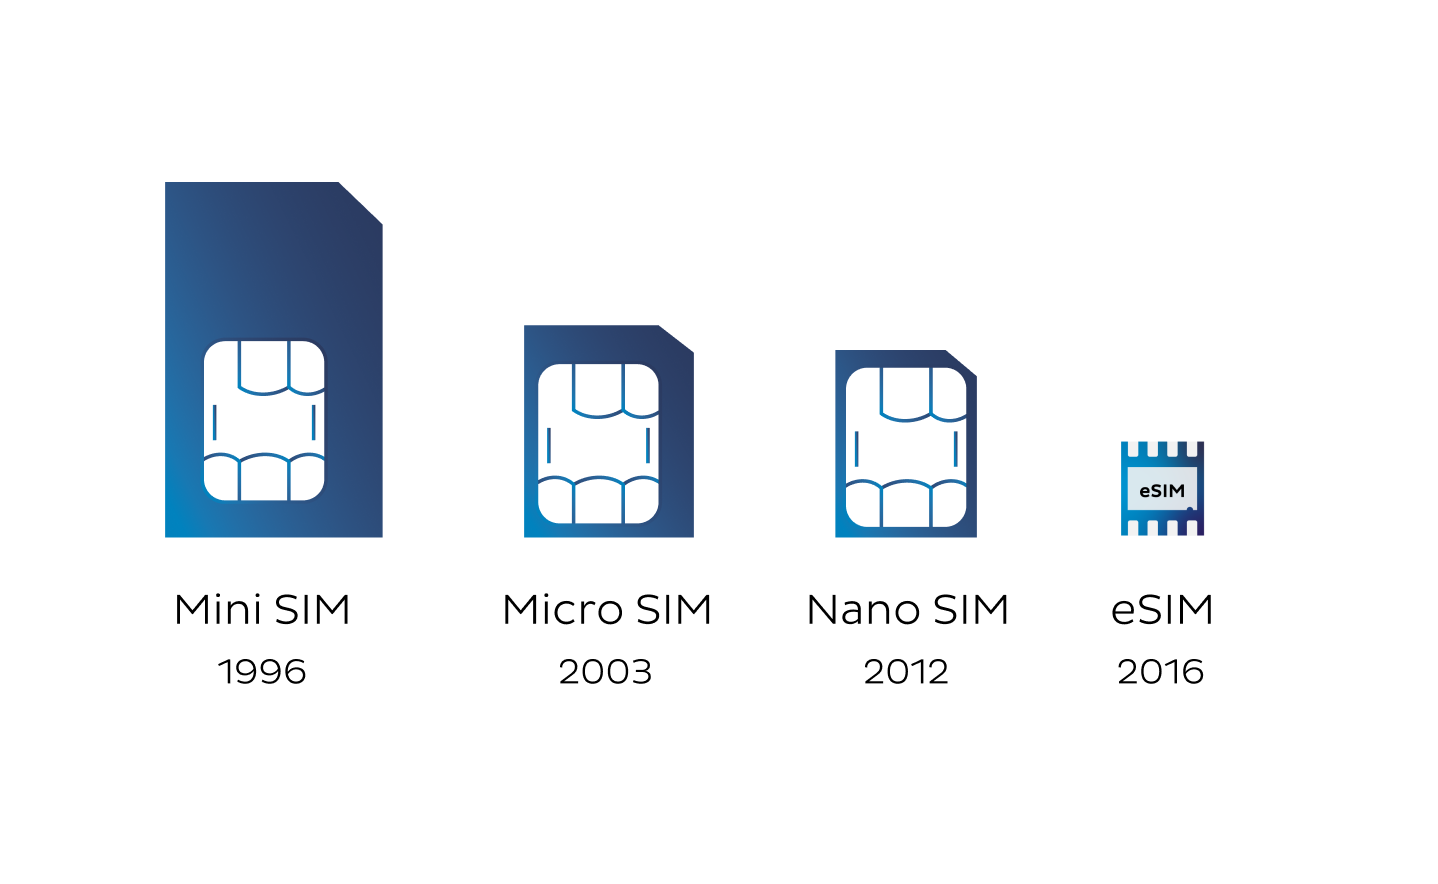 Evolution of SIM cards